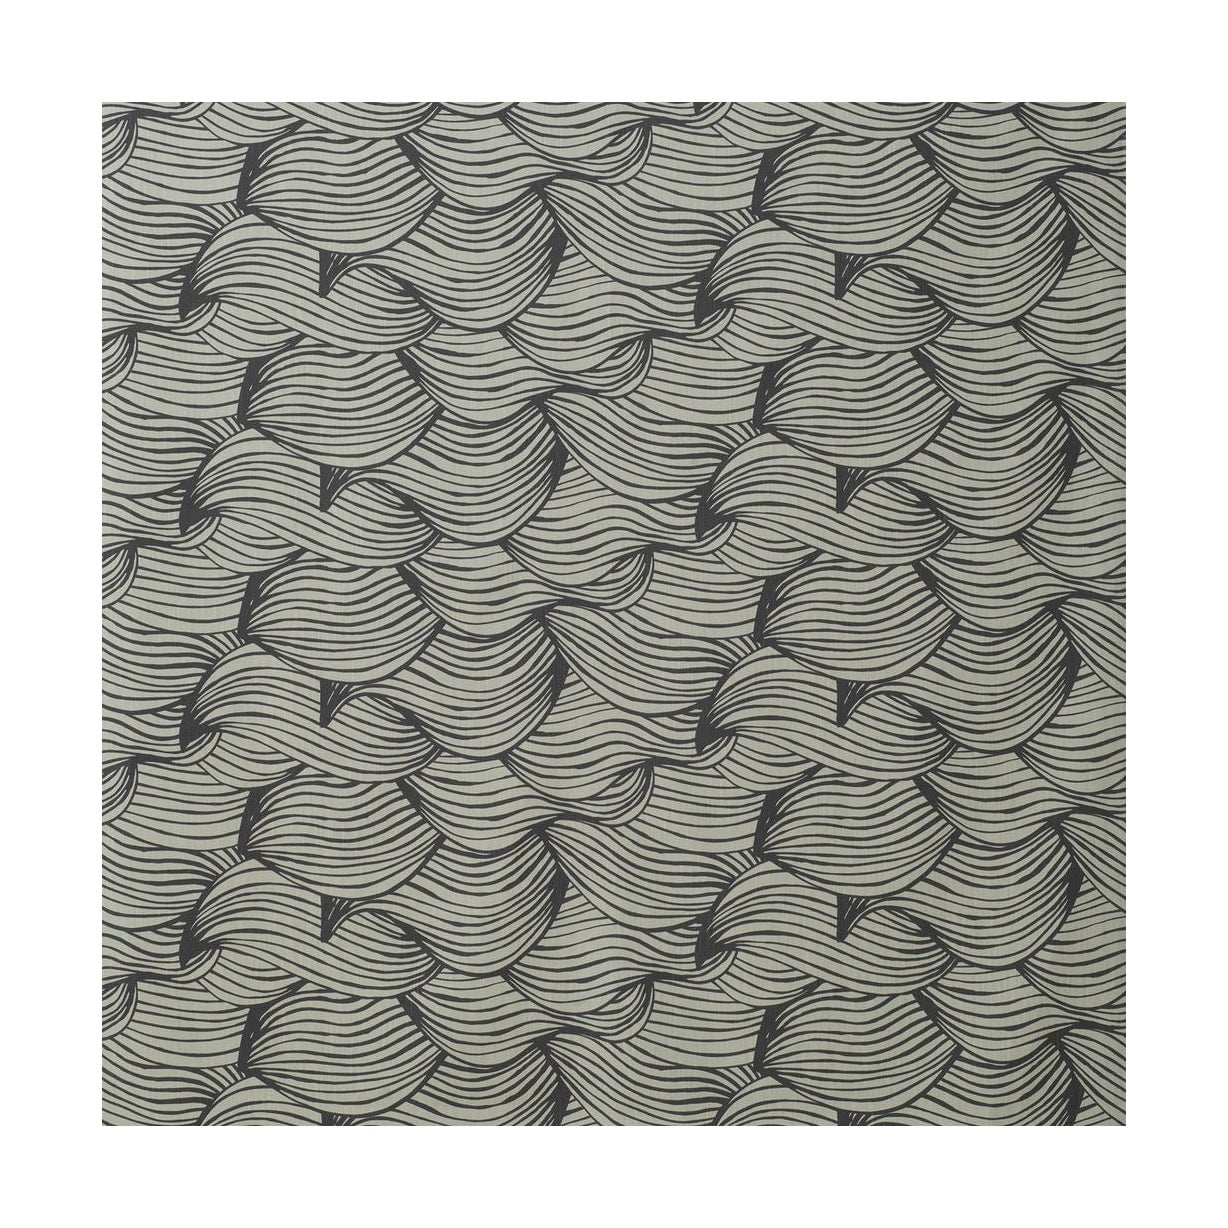 Larghezza del tessuto d'onda Spira 150 cm (prezzo per metro), grigio